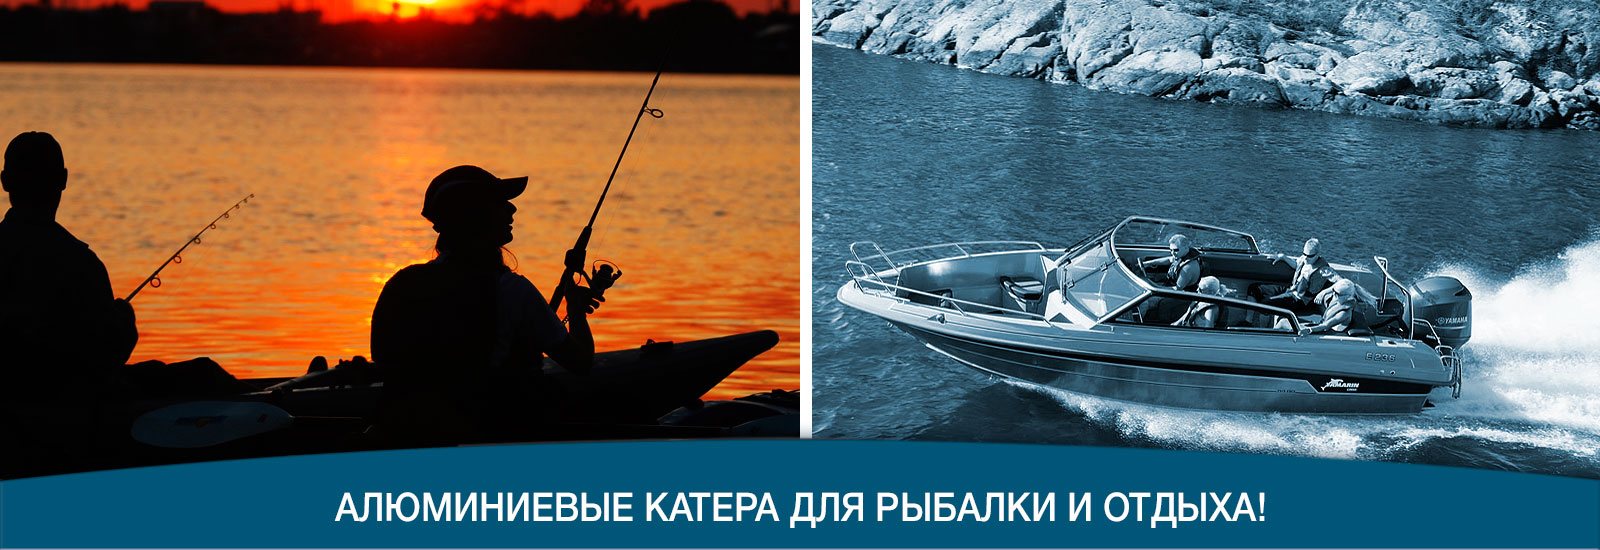 Алюминиевые катера для рыбалки и отдыха